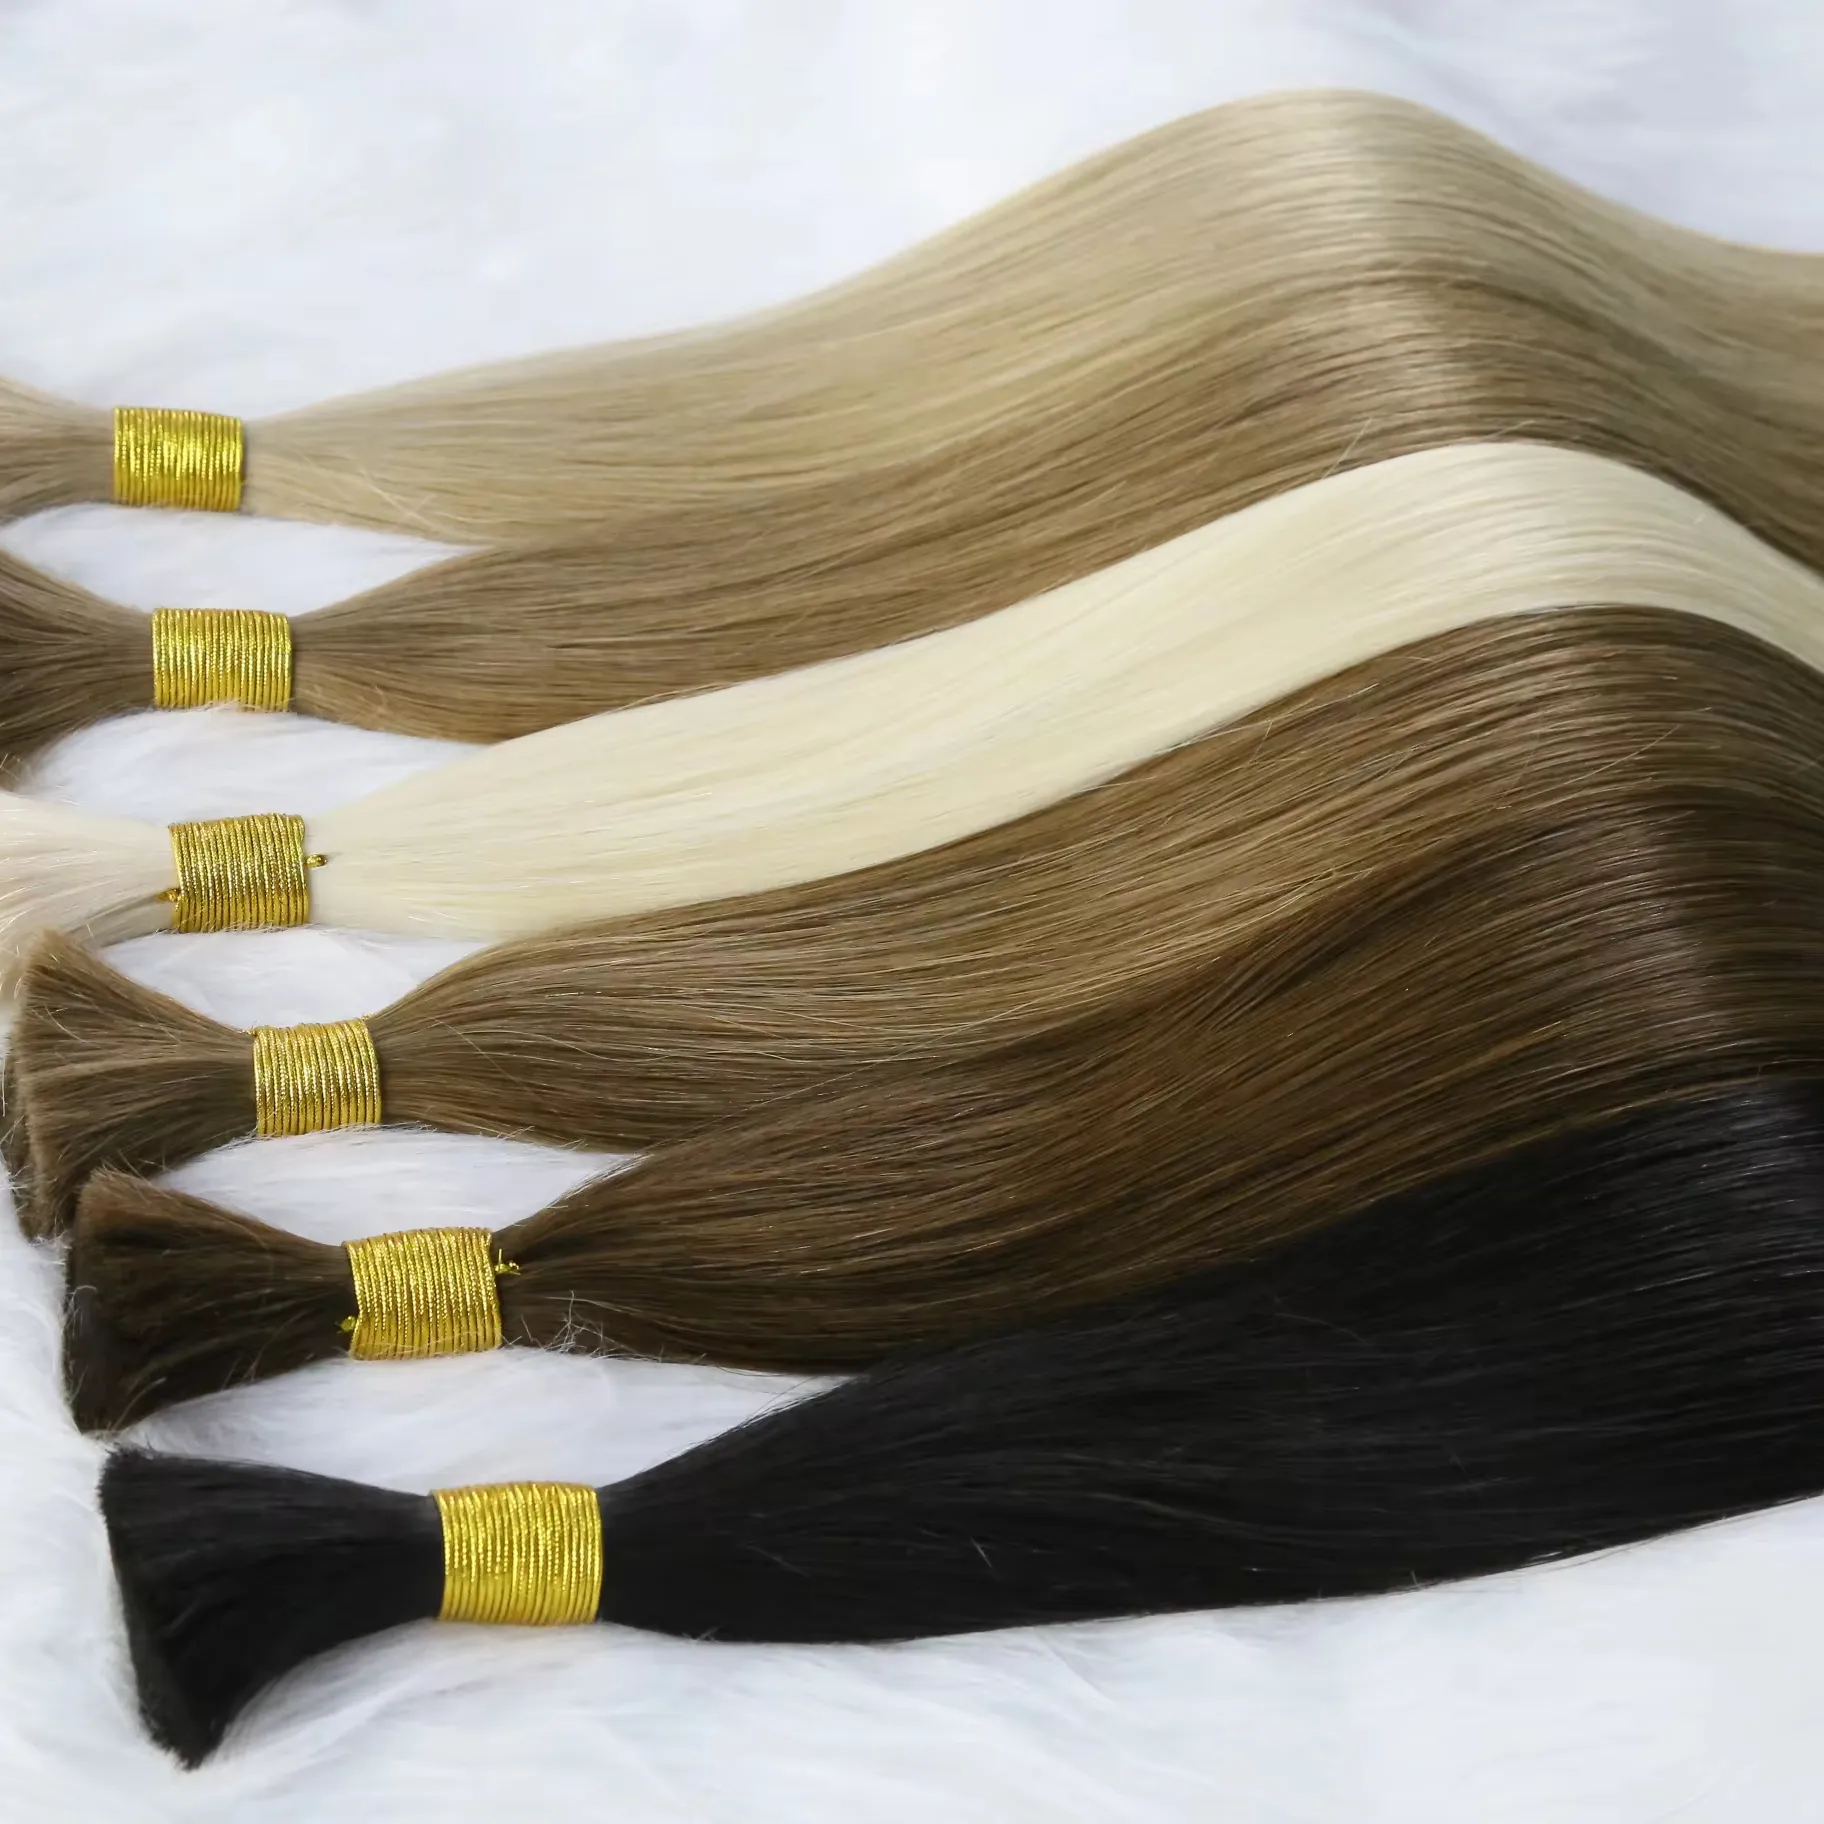 Trinh nữ Remy tóc con người mở rộng nhà máy ban đầu tóc số lượng lớn phần mở rộng Trinh chưa qua chế biến 100% tóc tự nhiên số lượng lớn cho phần mở rộng